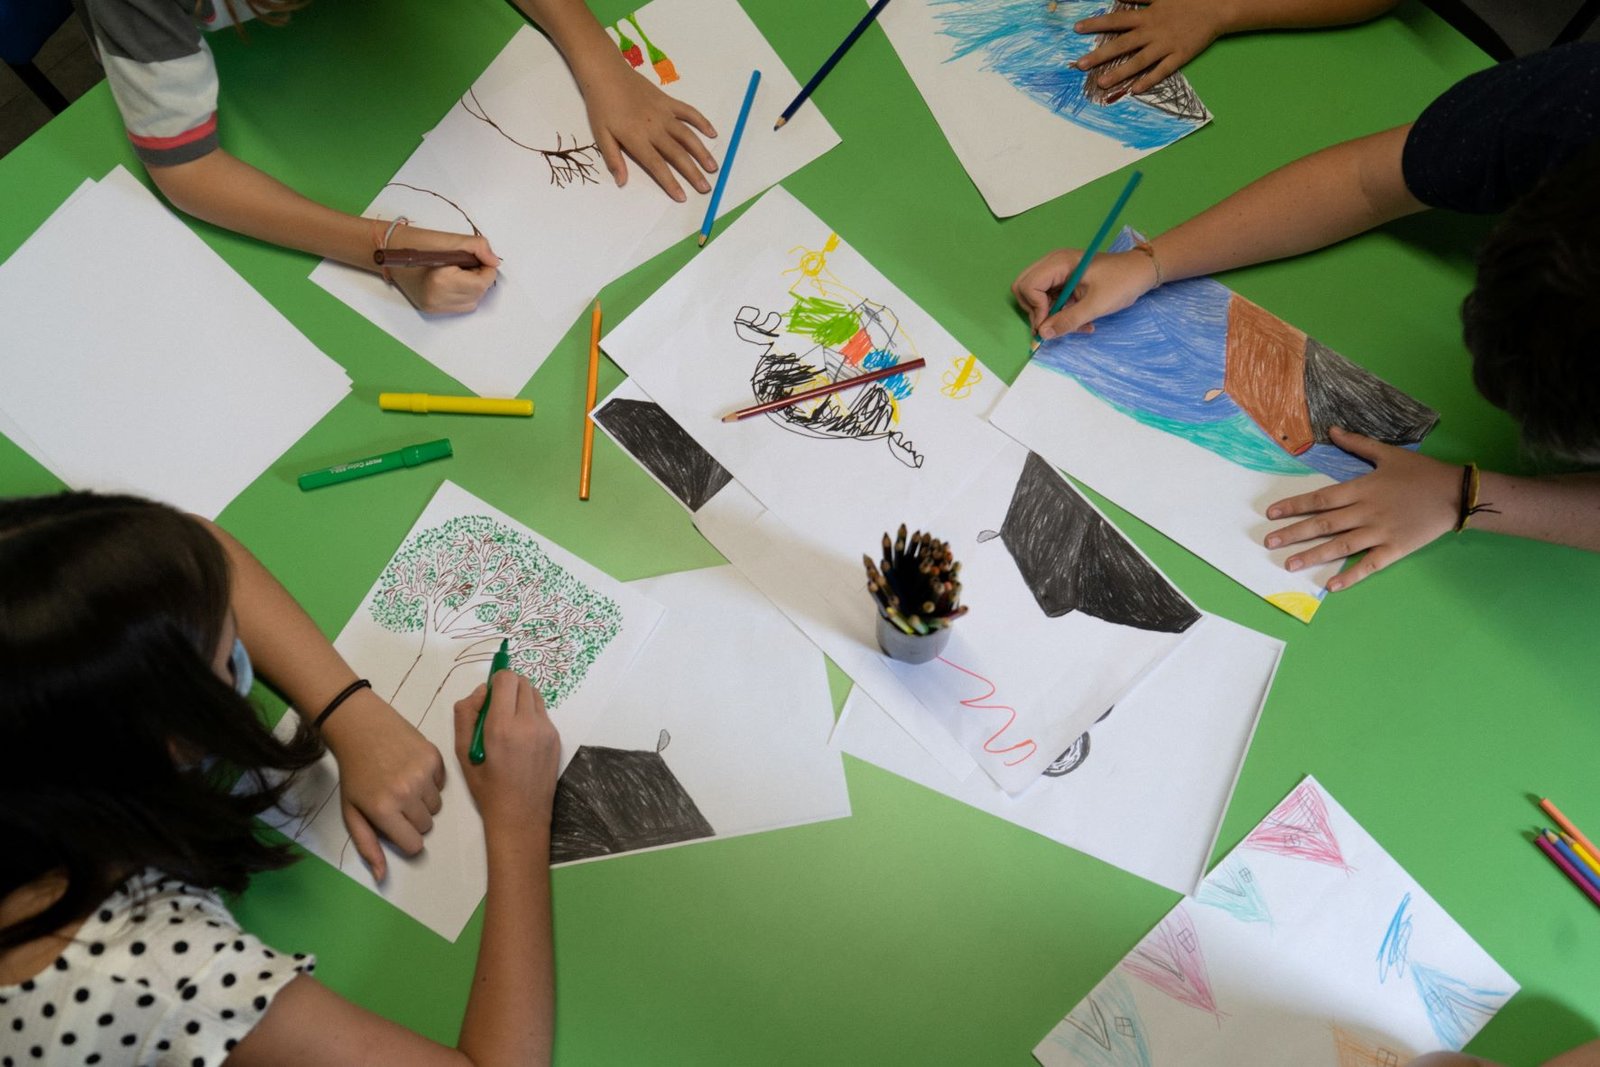 Atividades artísticas de criação fazem parte da programação do “Lugar de Criação”, do CCBB Educativo